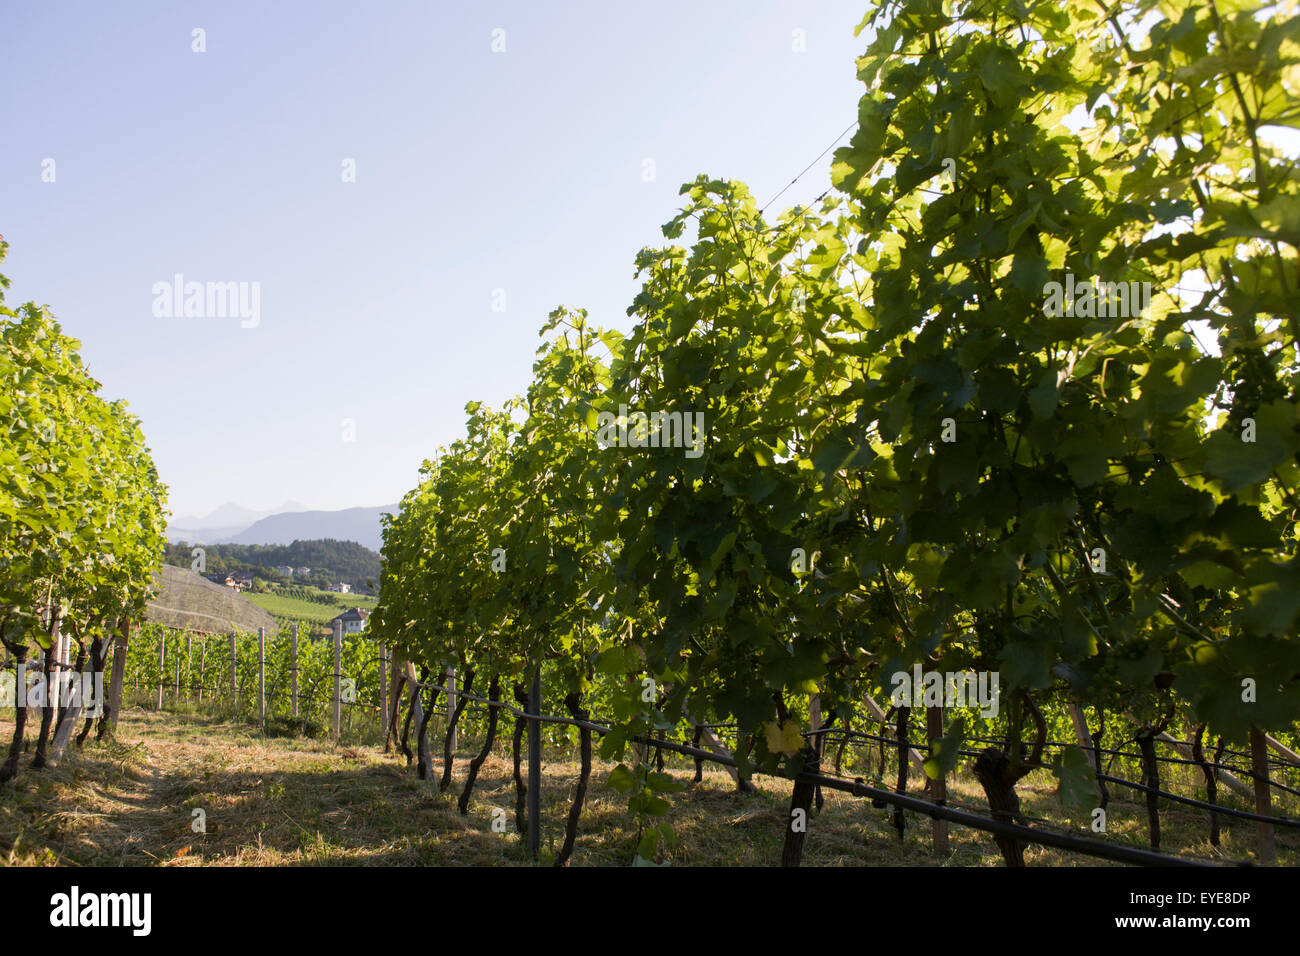 Vigneti nella regione vinicola del sud-ovest di Bolzano, Alto Adige, Italia settentrionale. Foto Stock